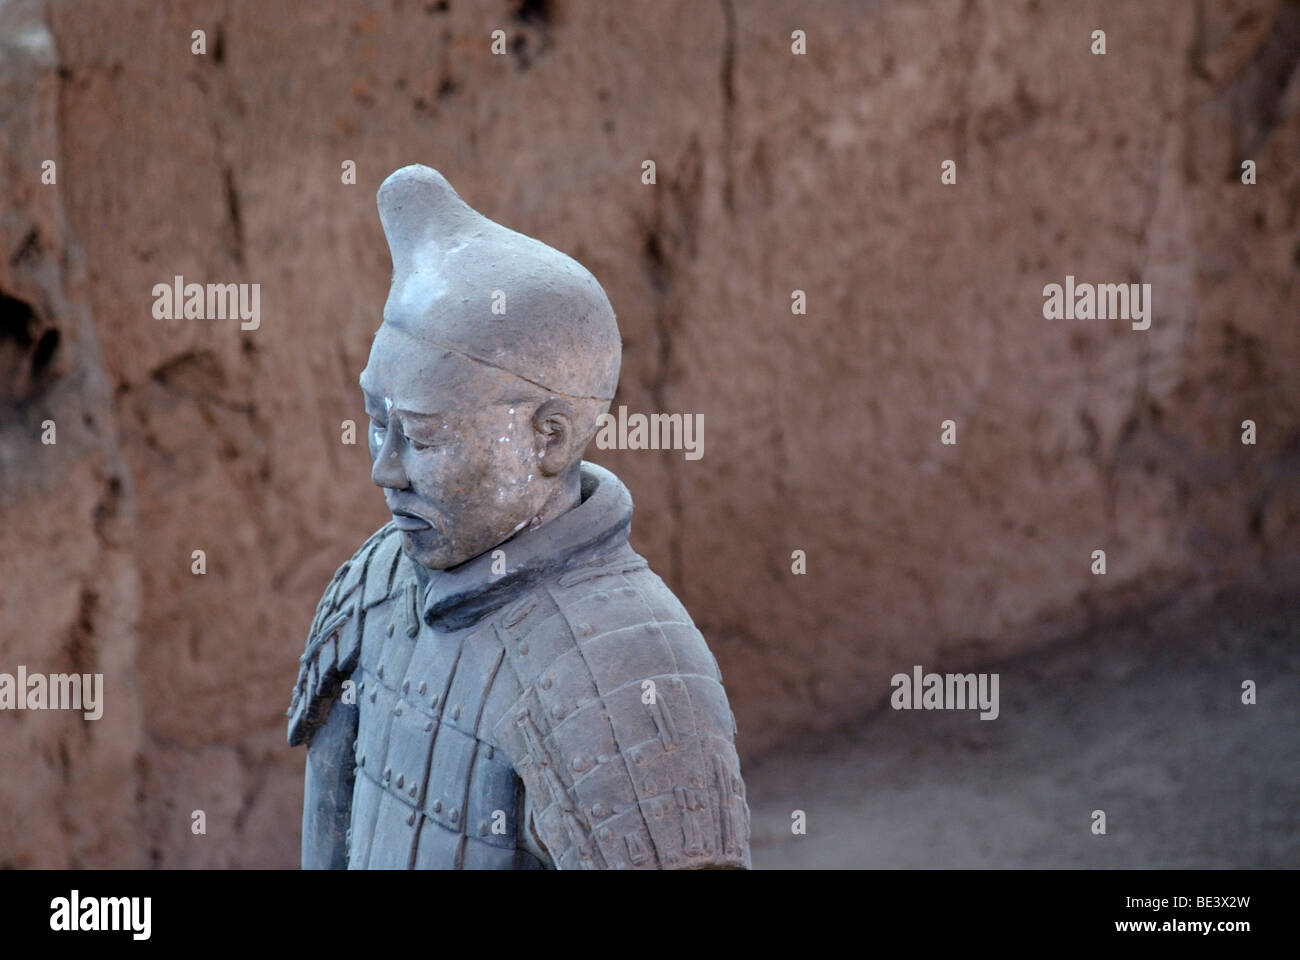 Esercito di Terracotta, parte della tomba complessa, hall 1, Mausoleo del primo imperatore Qin Shi Huang in Xi'an, Provincia di Shaanxi, mento Foto Stock